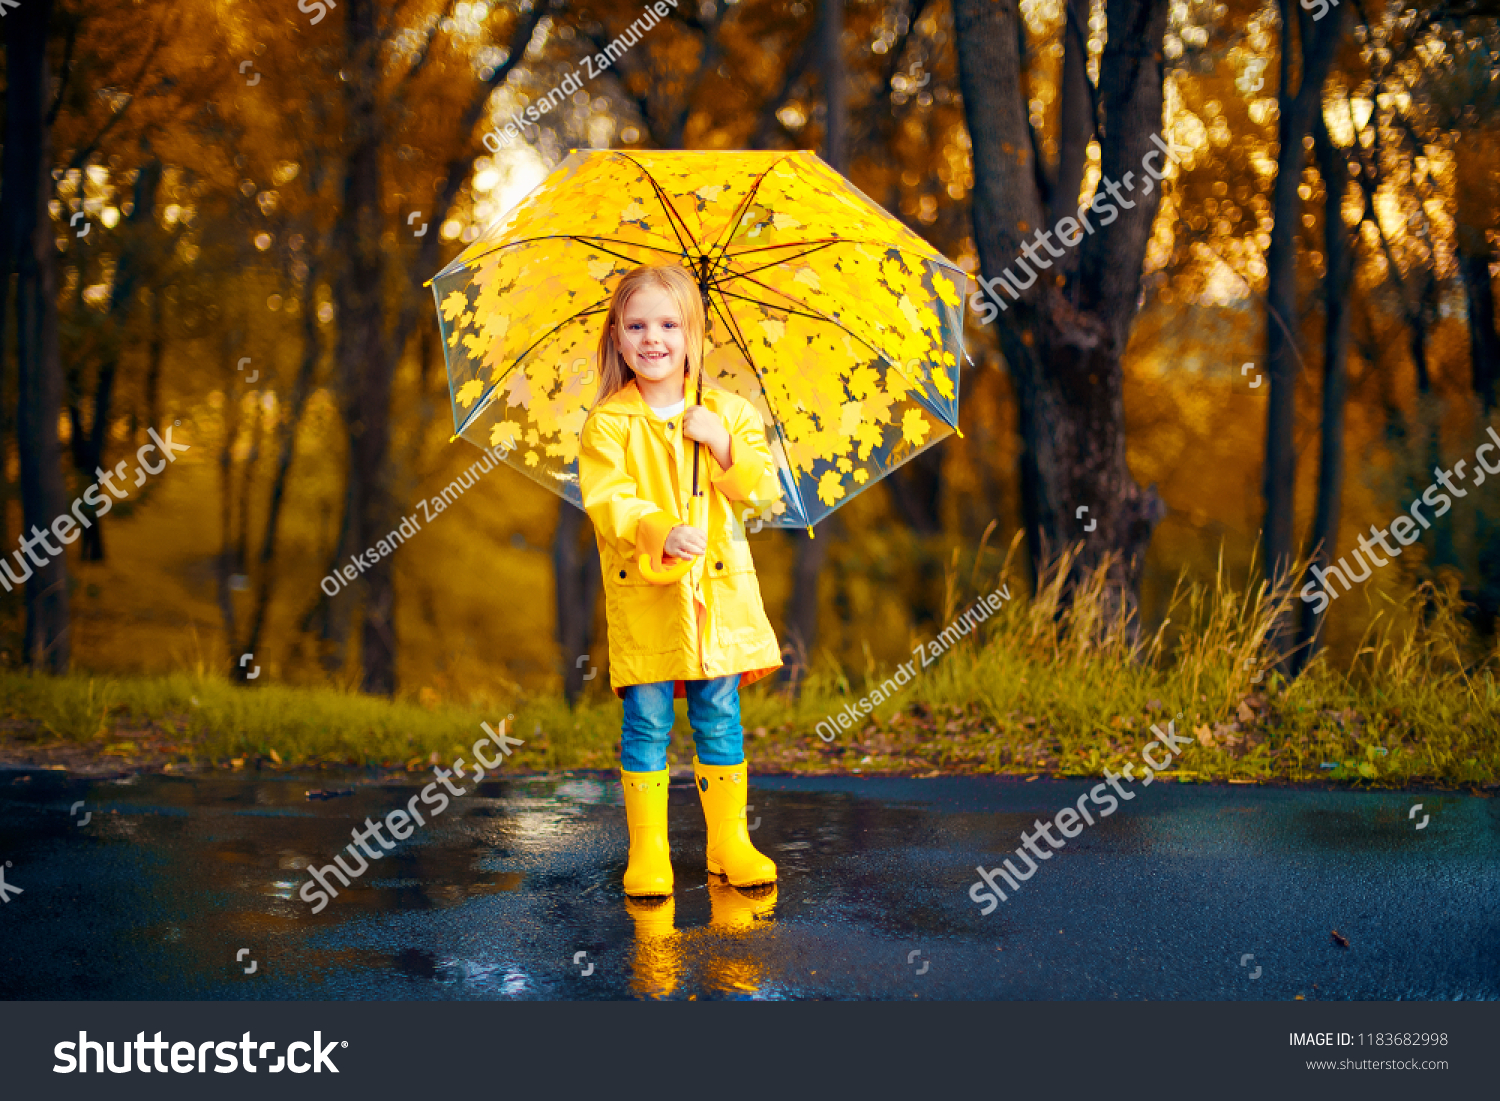 Ребенок с зонтиком и в резиновых сапогах